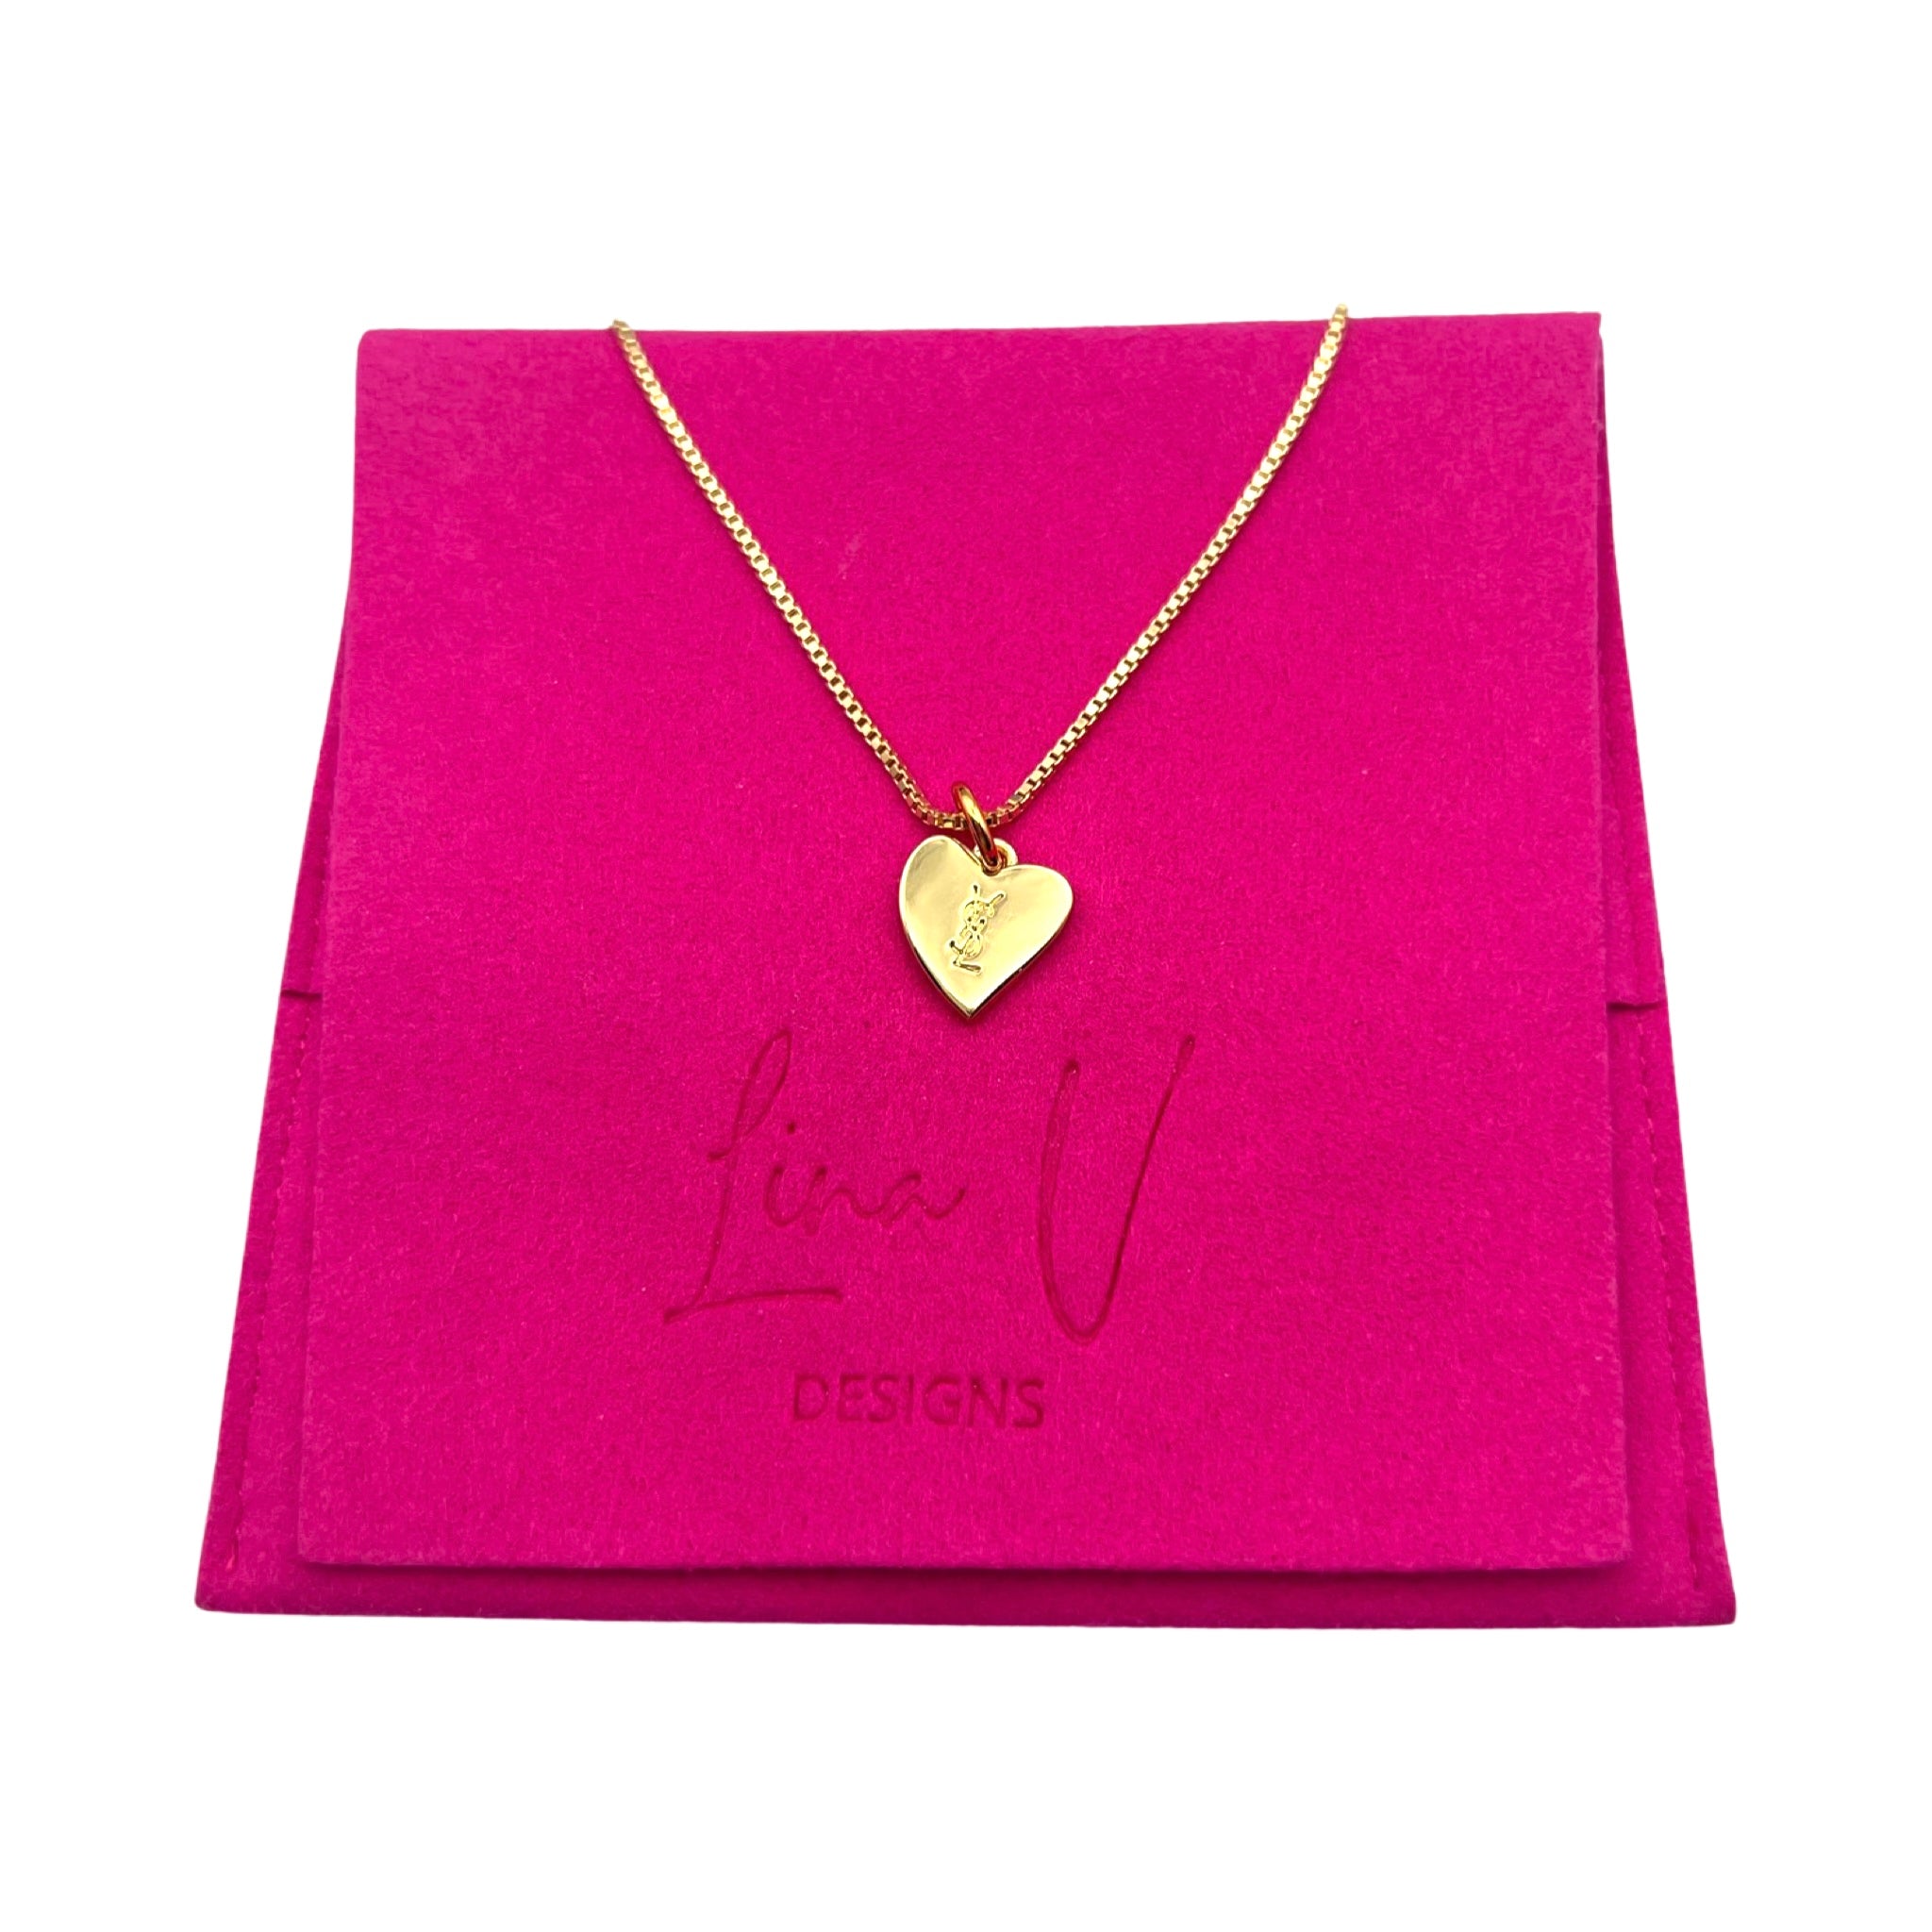 Vintage YVES SAINT LAURENT Oversized heart pendant necklace | Vintage chain  necklace, Pendant necklace, Heart pendant necklace